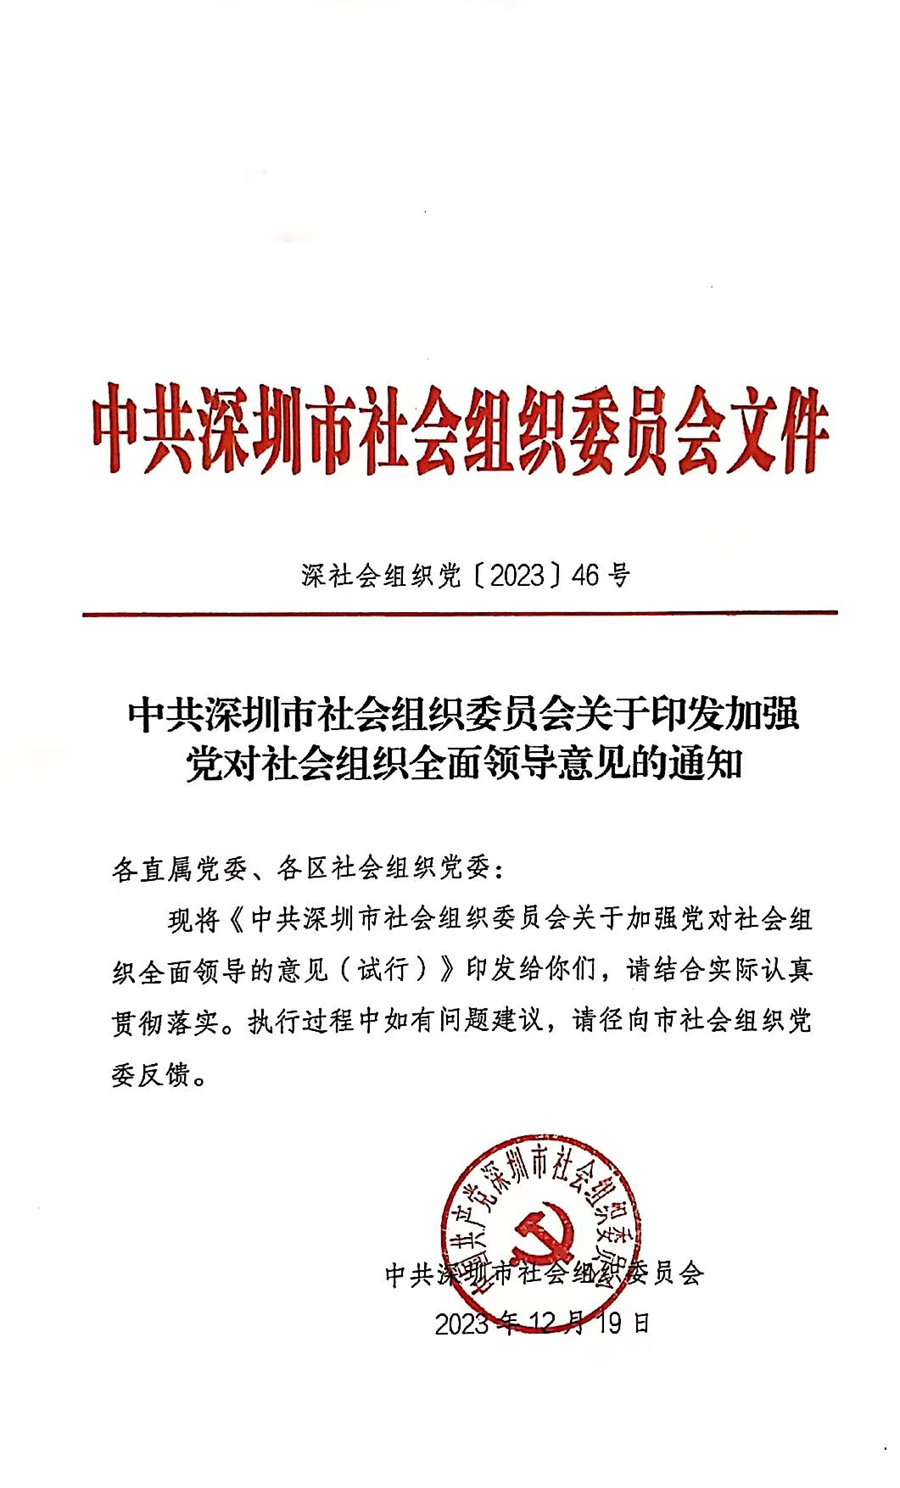 深圳市珍珠行业协会连续获评3A级社会组织